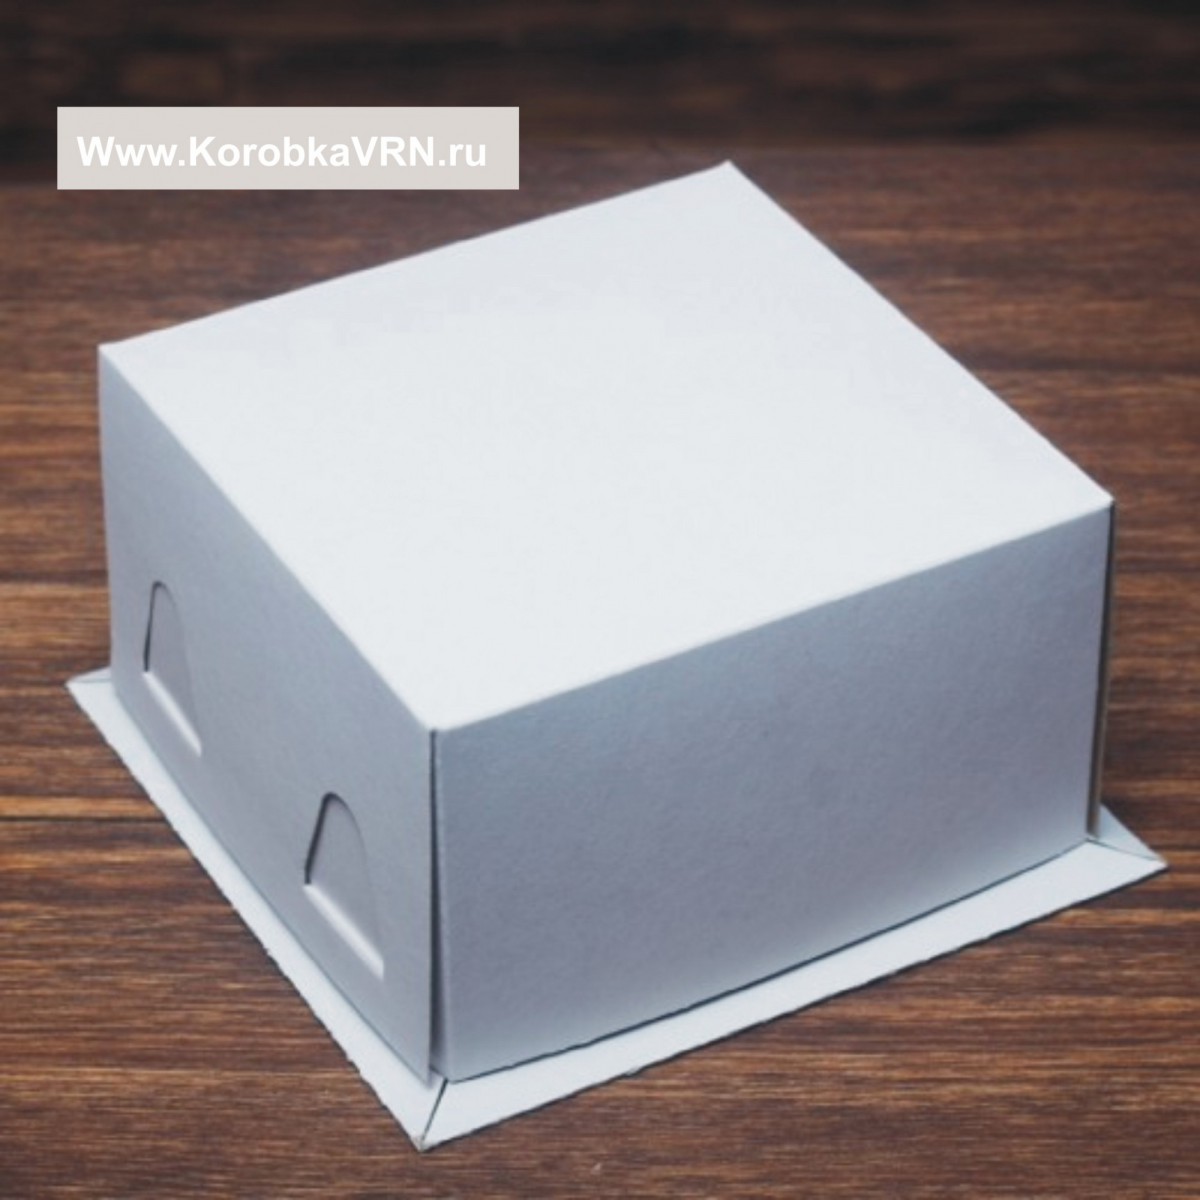 Коробка для торта белая "Классика" 21х21х10 см (картон)